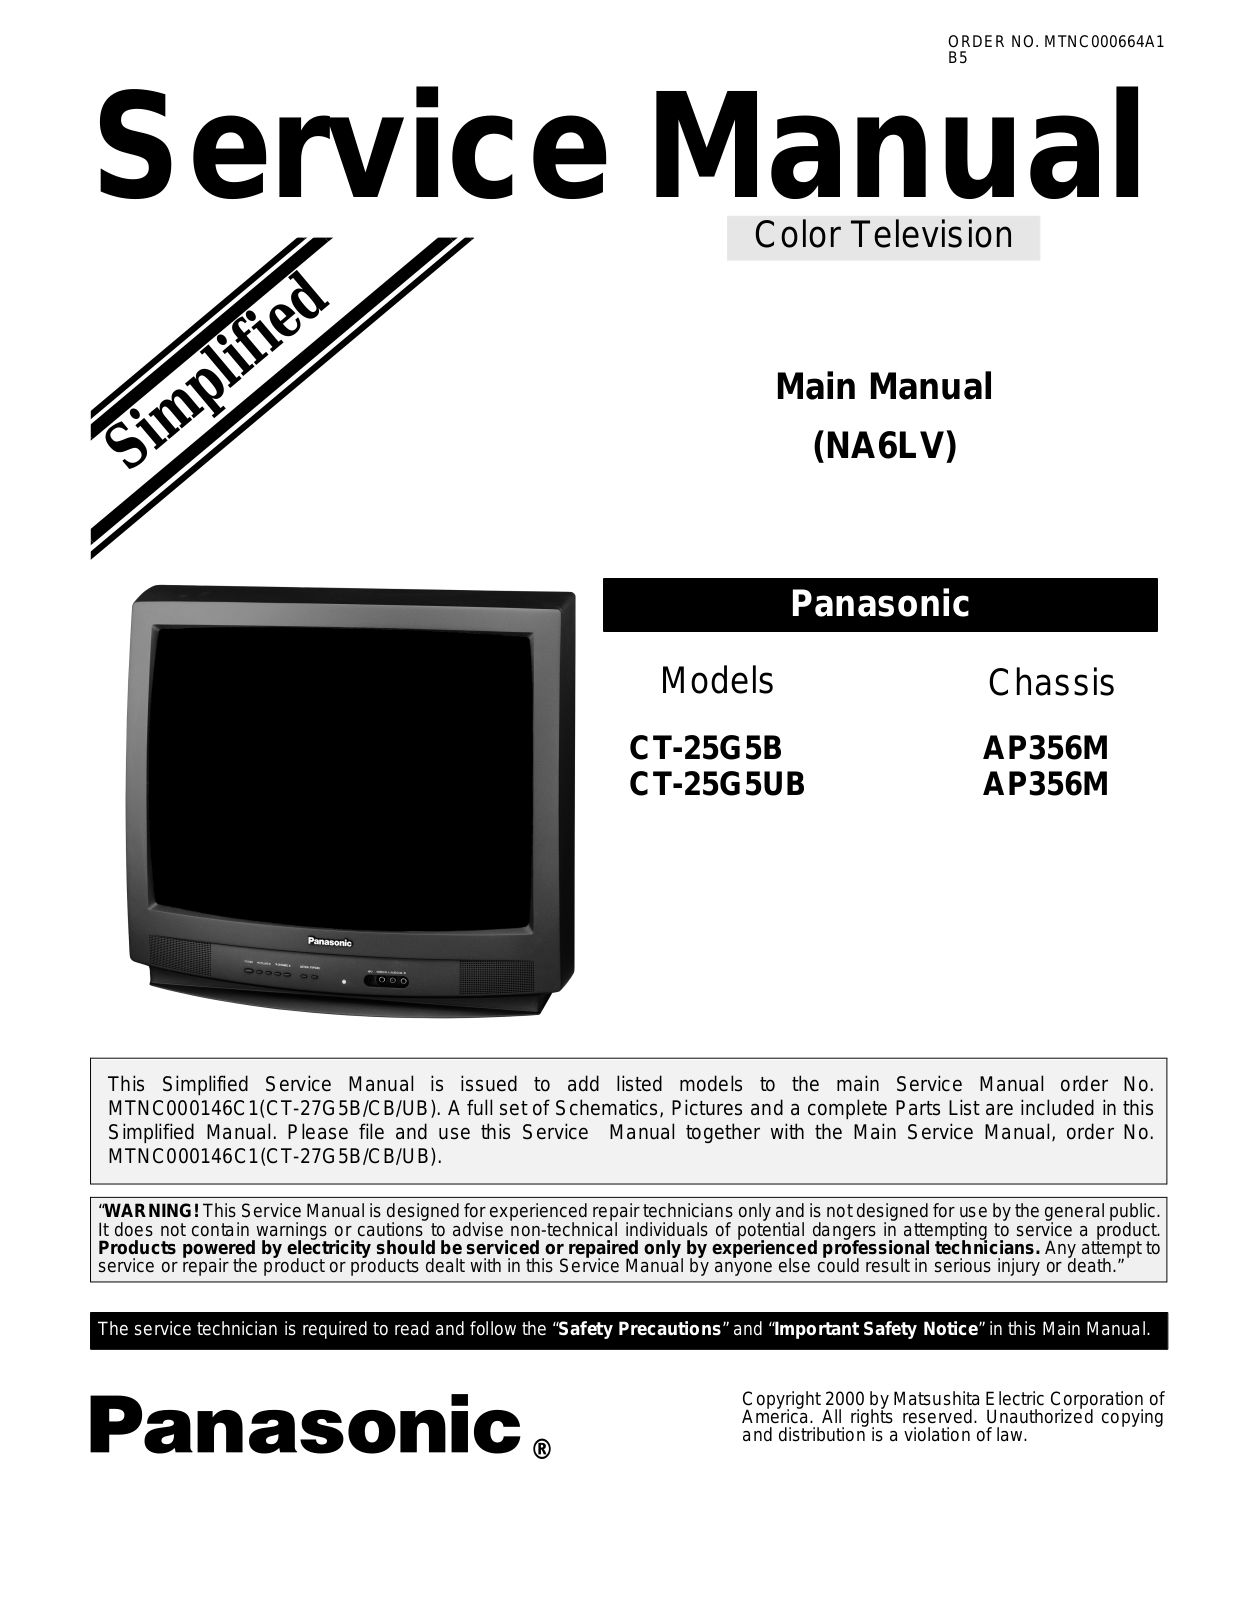 Panasonic CT-25G5B Schematic